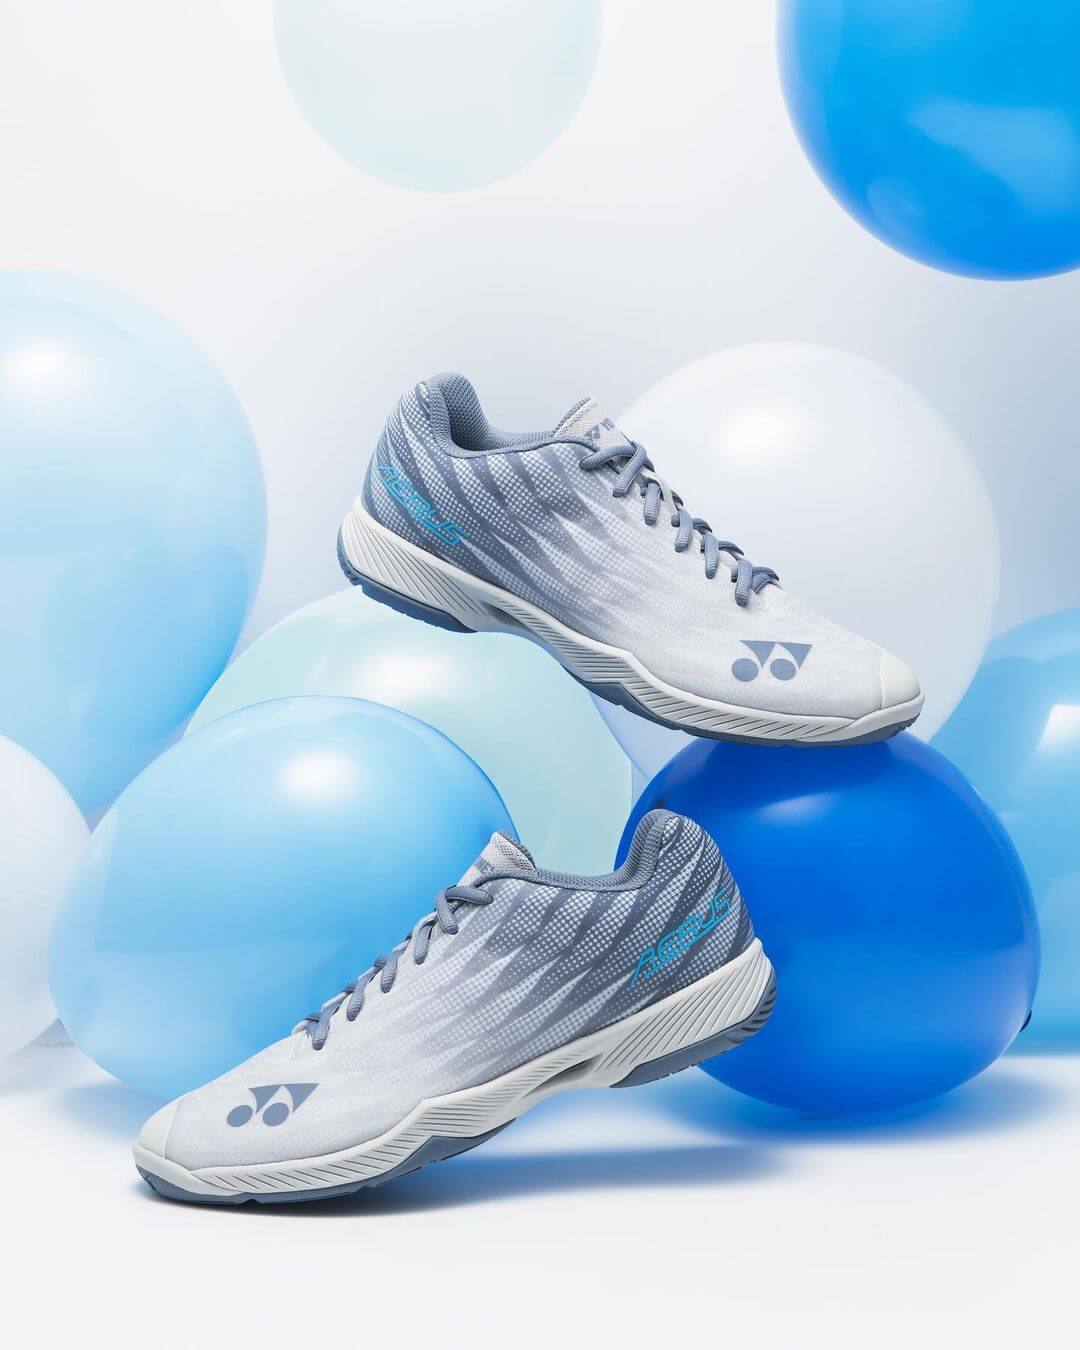 Yonex Aerus Z2 (Blue/Gray) Men's Shoe